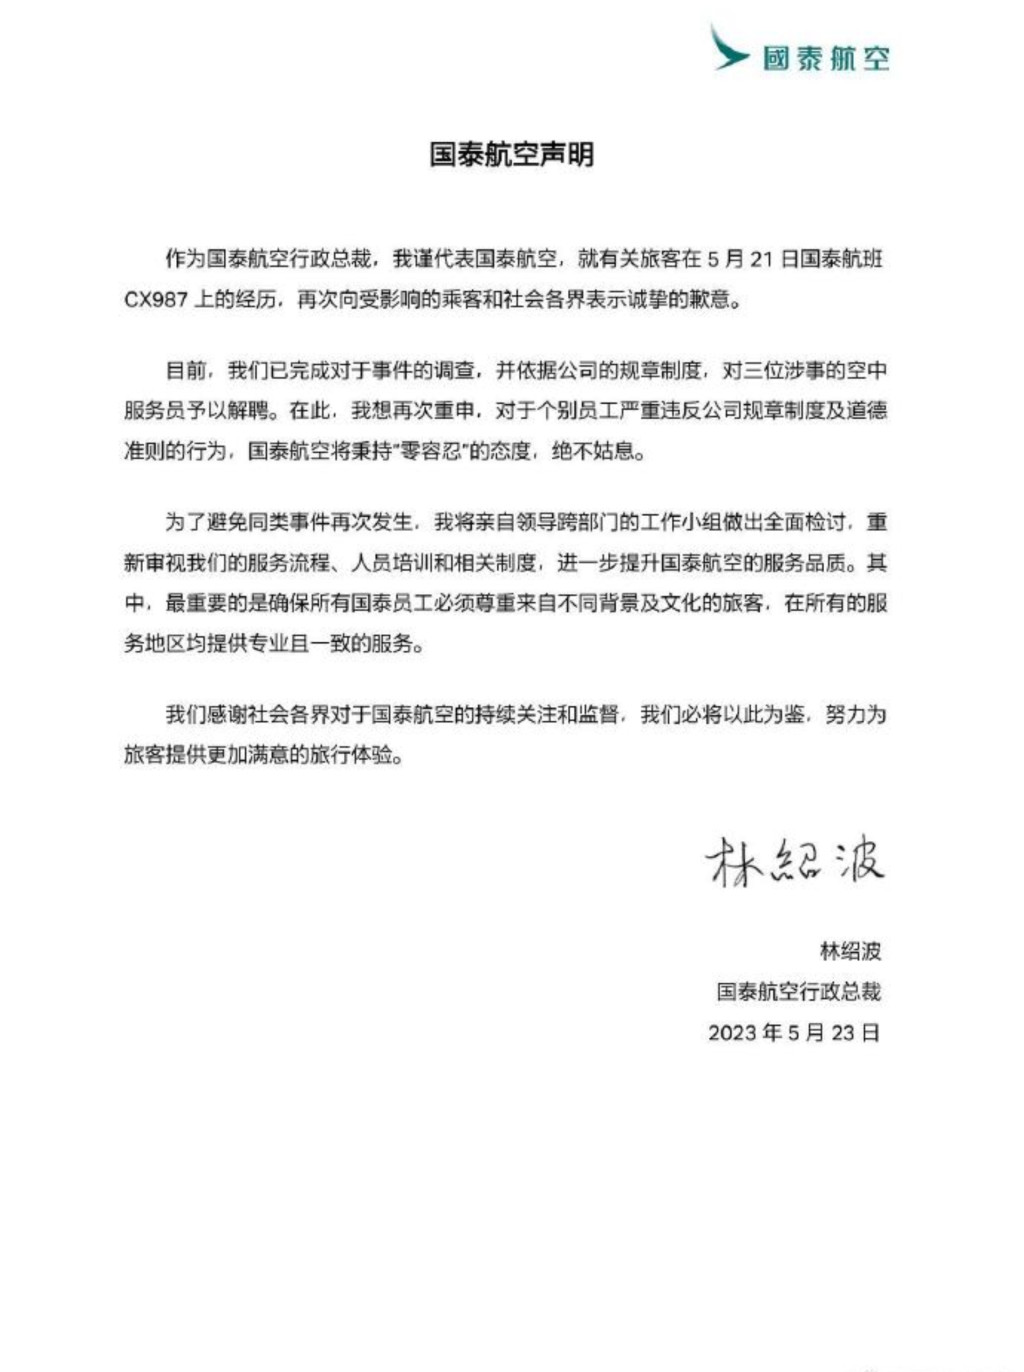 國泰CEO林紹波5月23日晚上9時多在微博發聲明道歉。